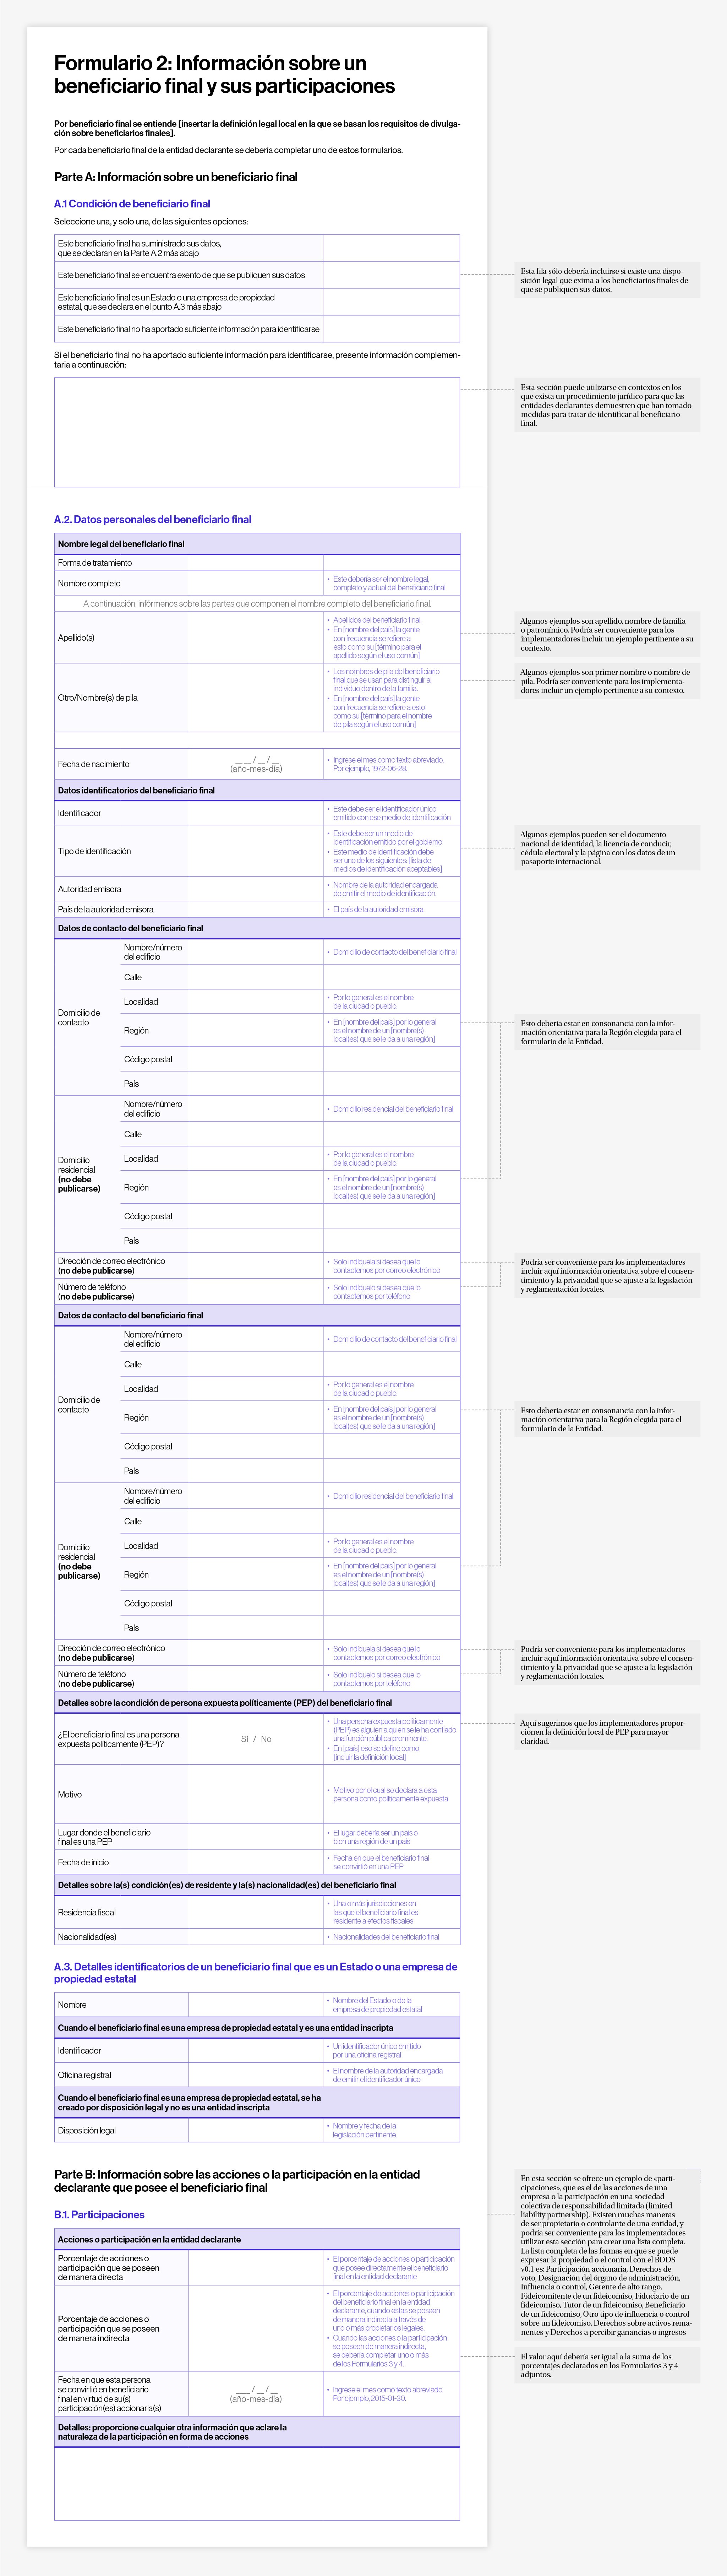 Formulario 2: Información sobre un beneficiario final y sus participaciones (Example paper forms for collecting beneficial ownership data – Form 2)